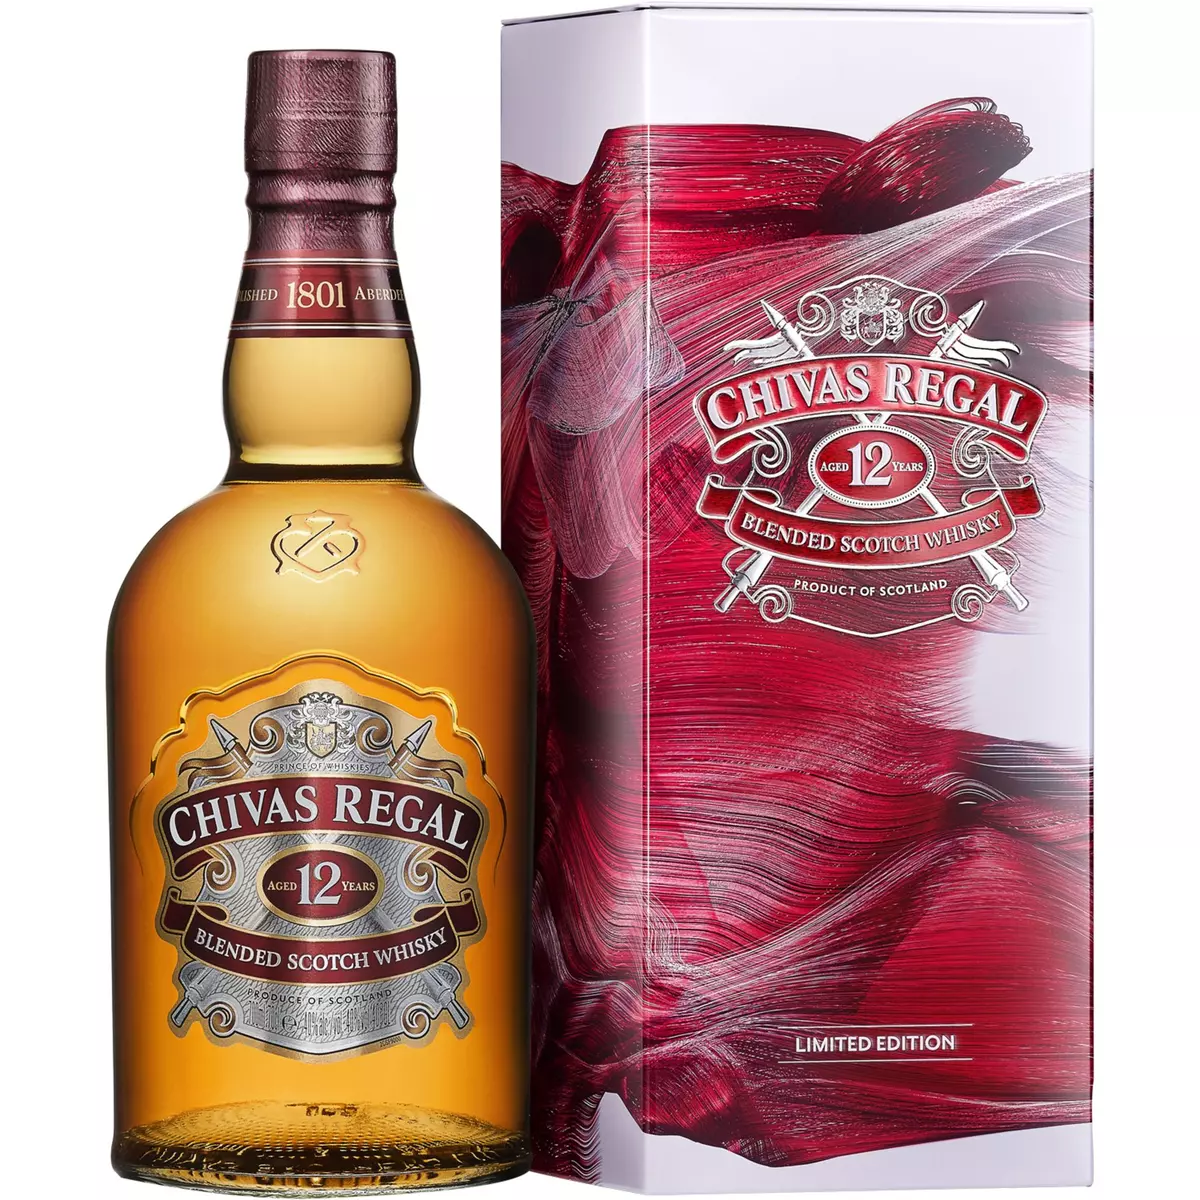 CHIVAS REGAL Scotch whisky blended malt écossais 12 ans 40% étui métal 70cl